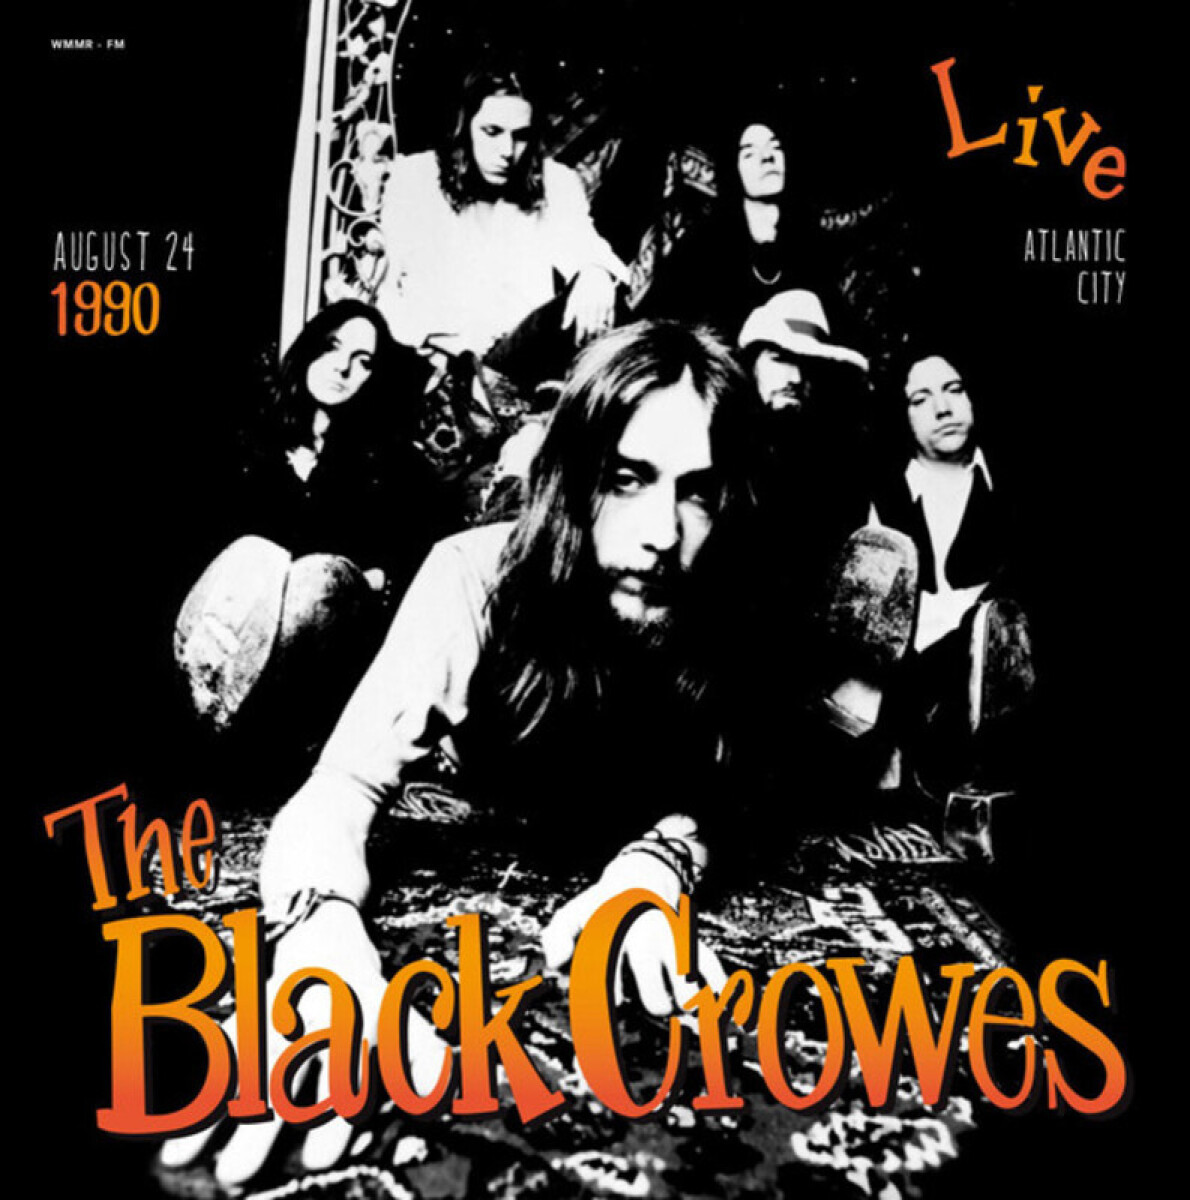 (c) Black Crowes -live Atlantic City August 24 90 - Vinilo 